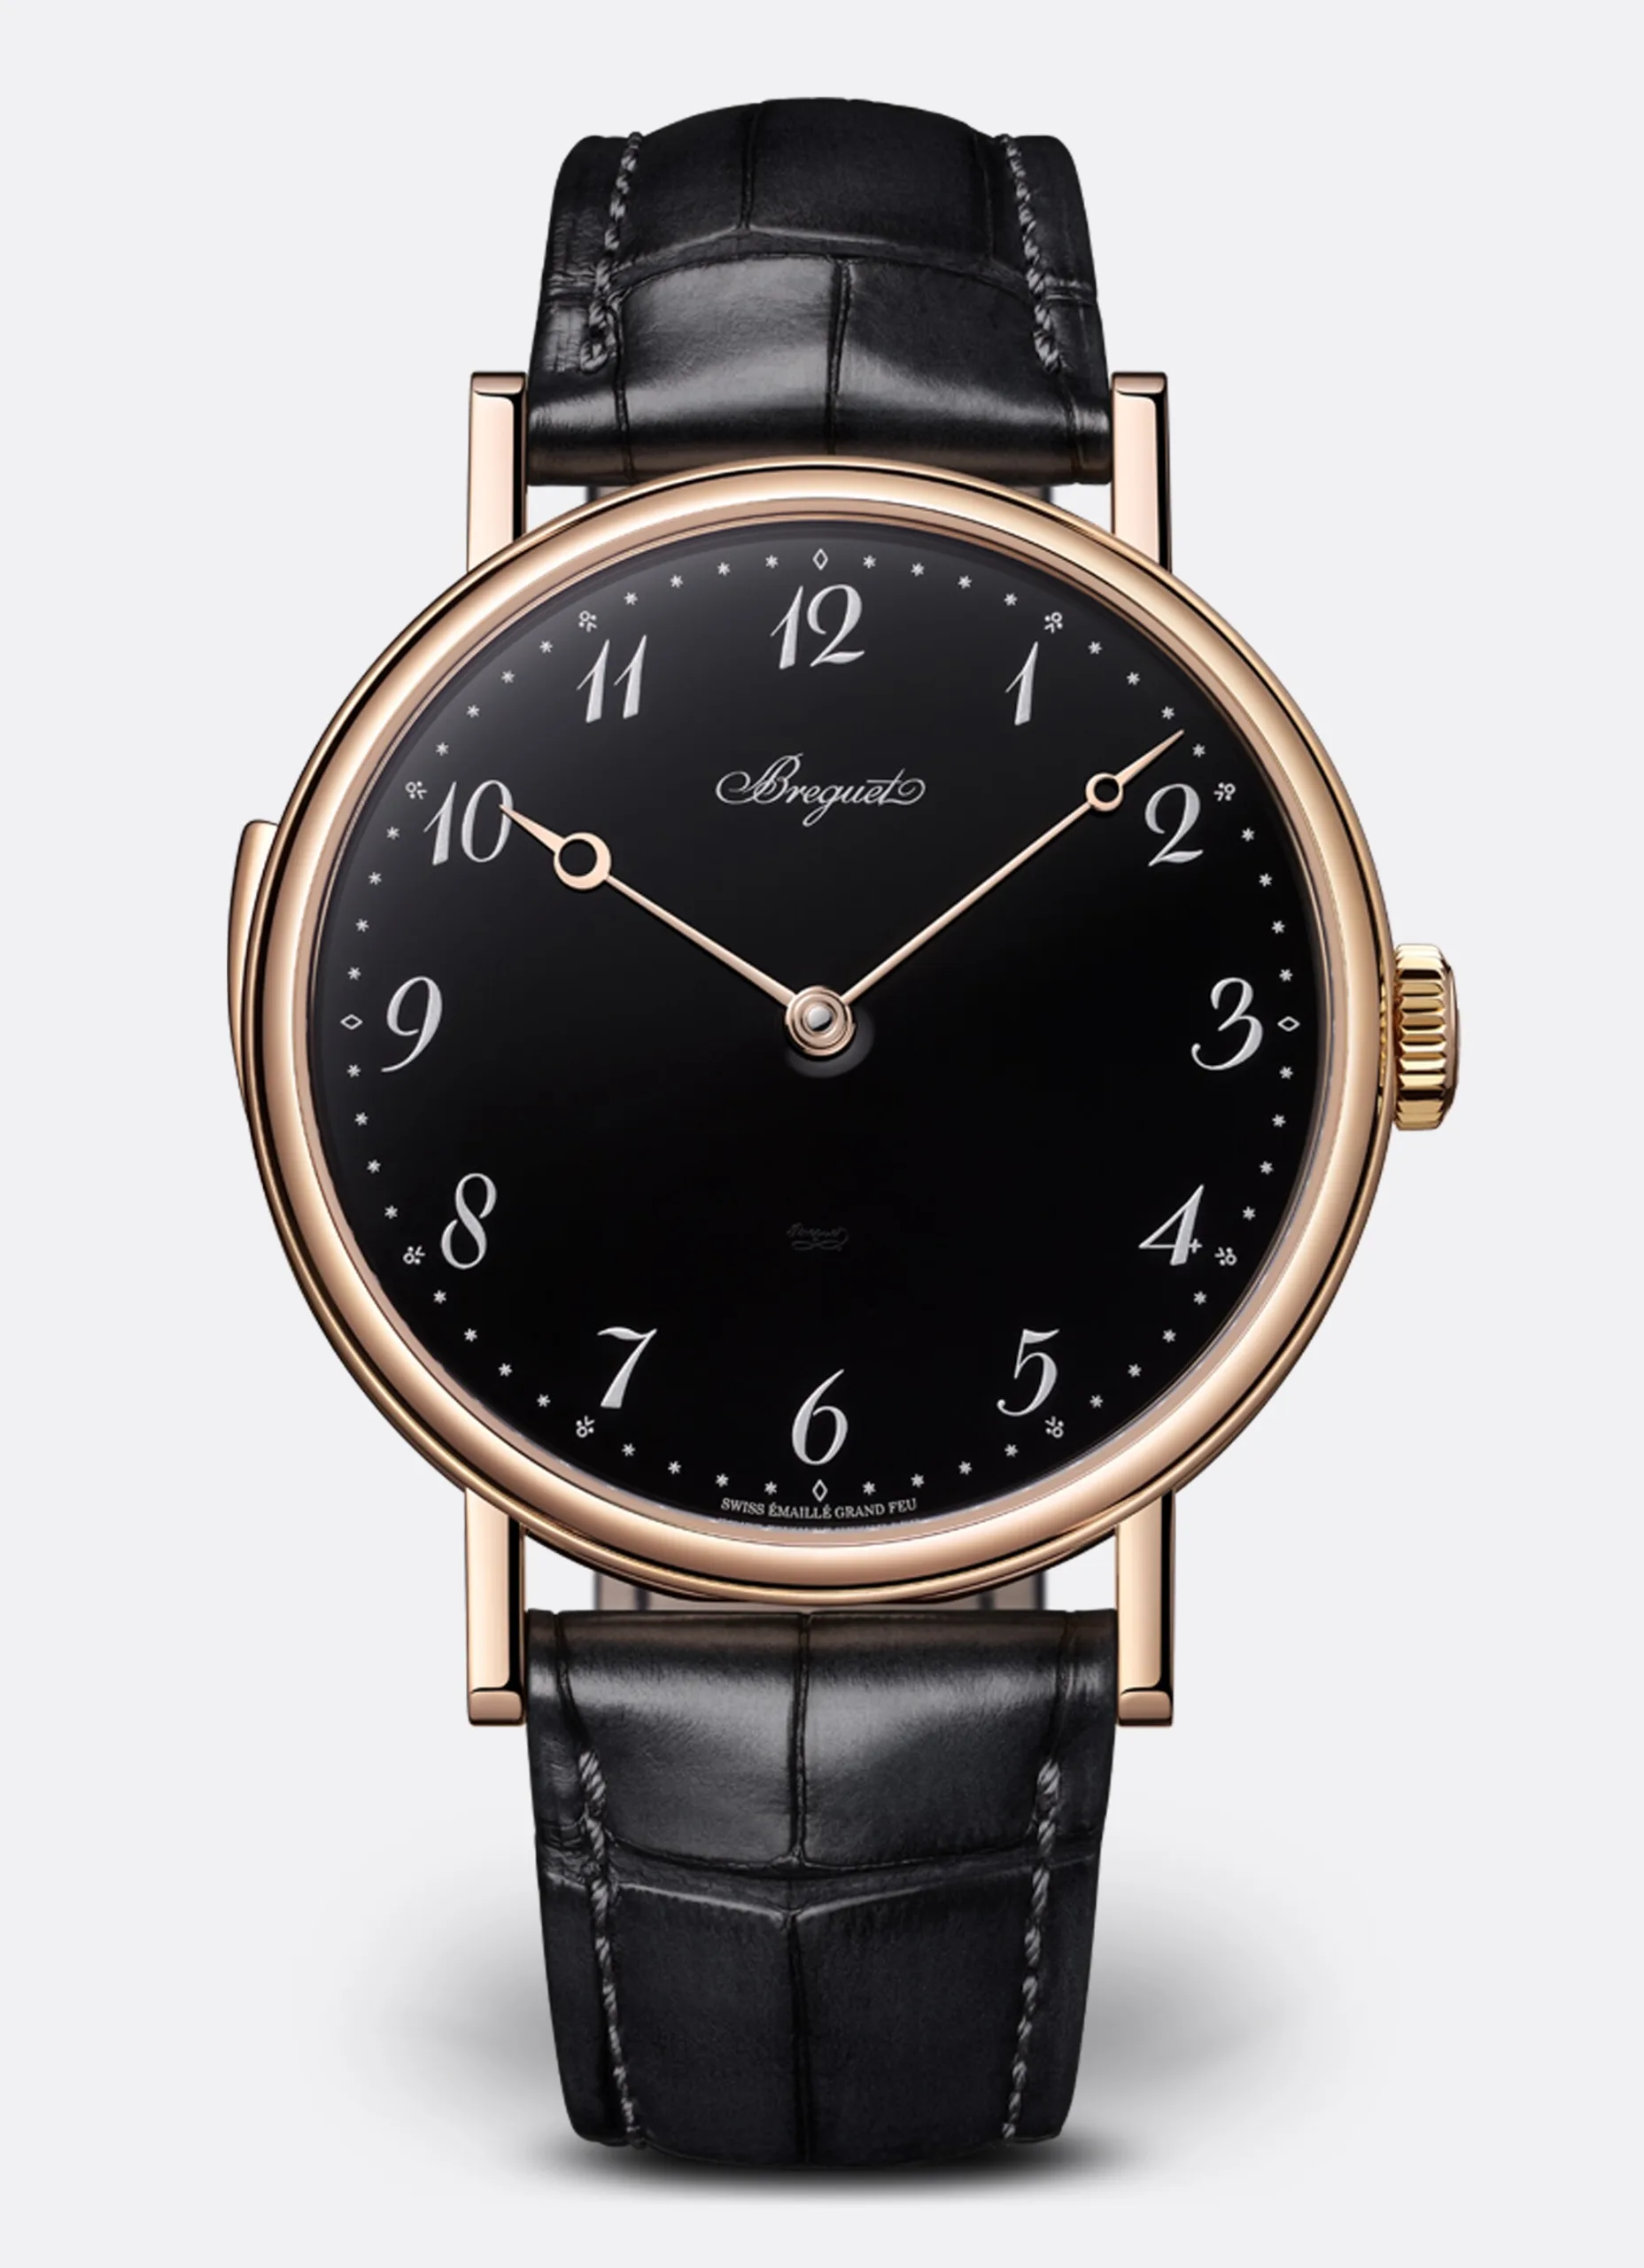 The Breguet Classique 7637 - A Timeless Elegance